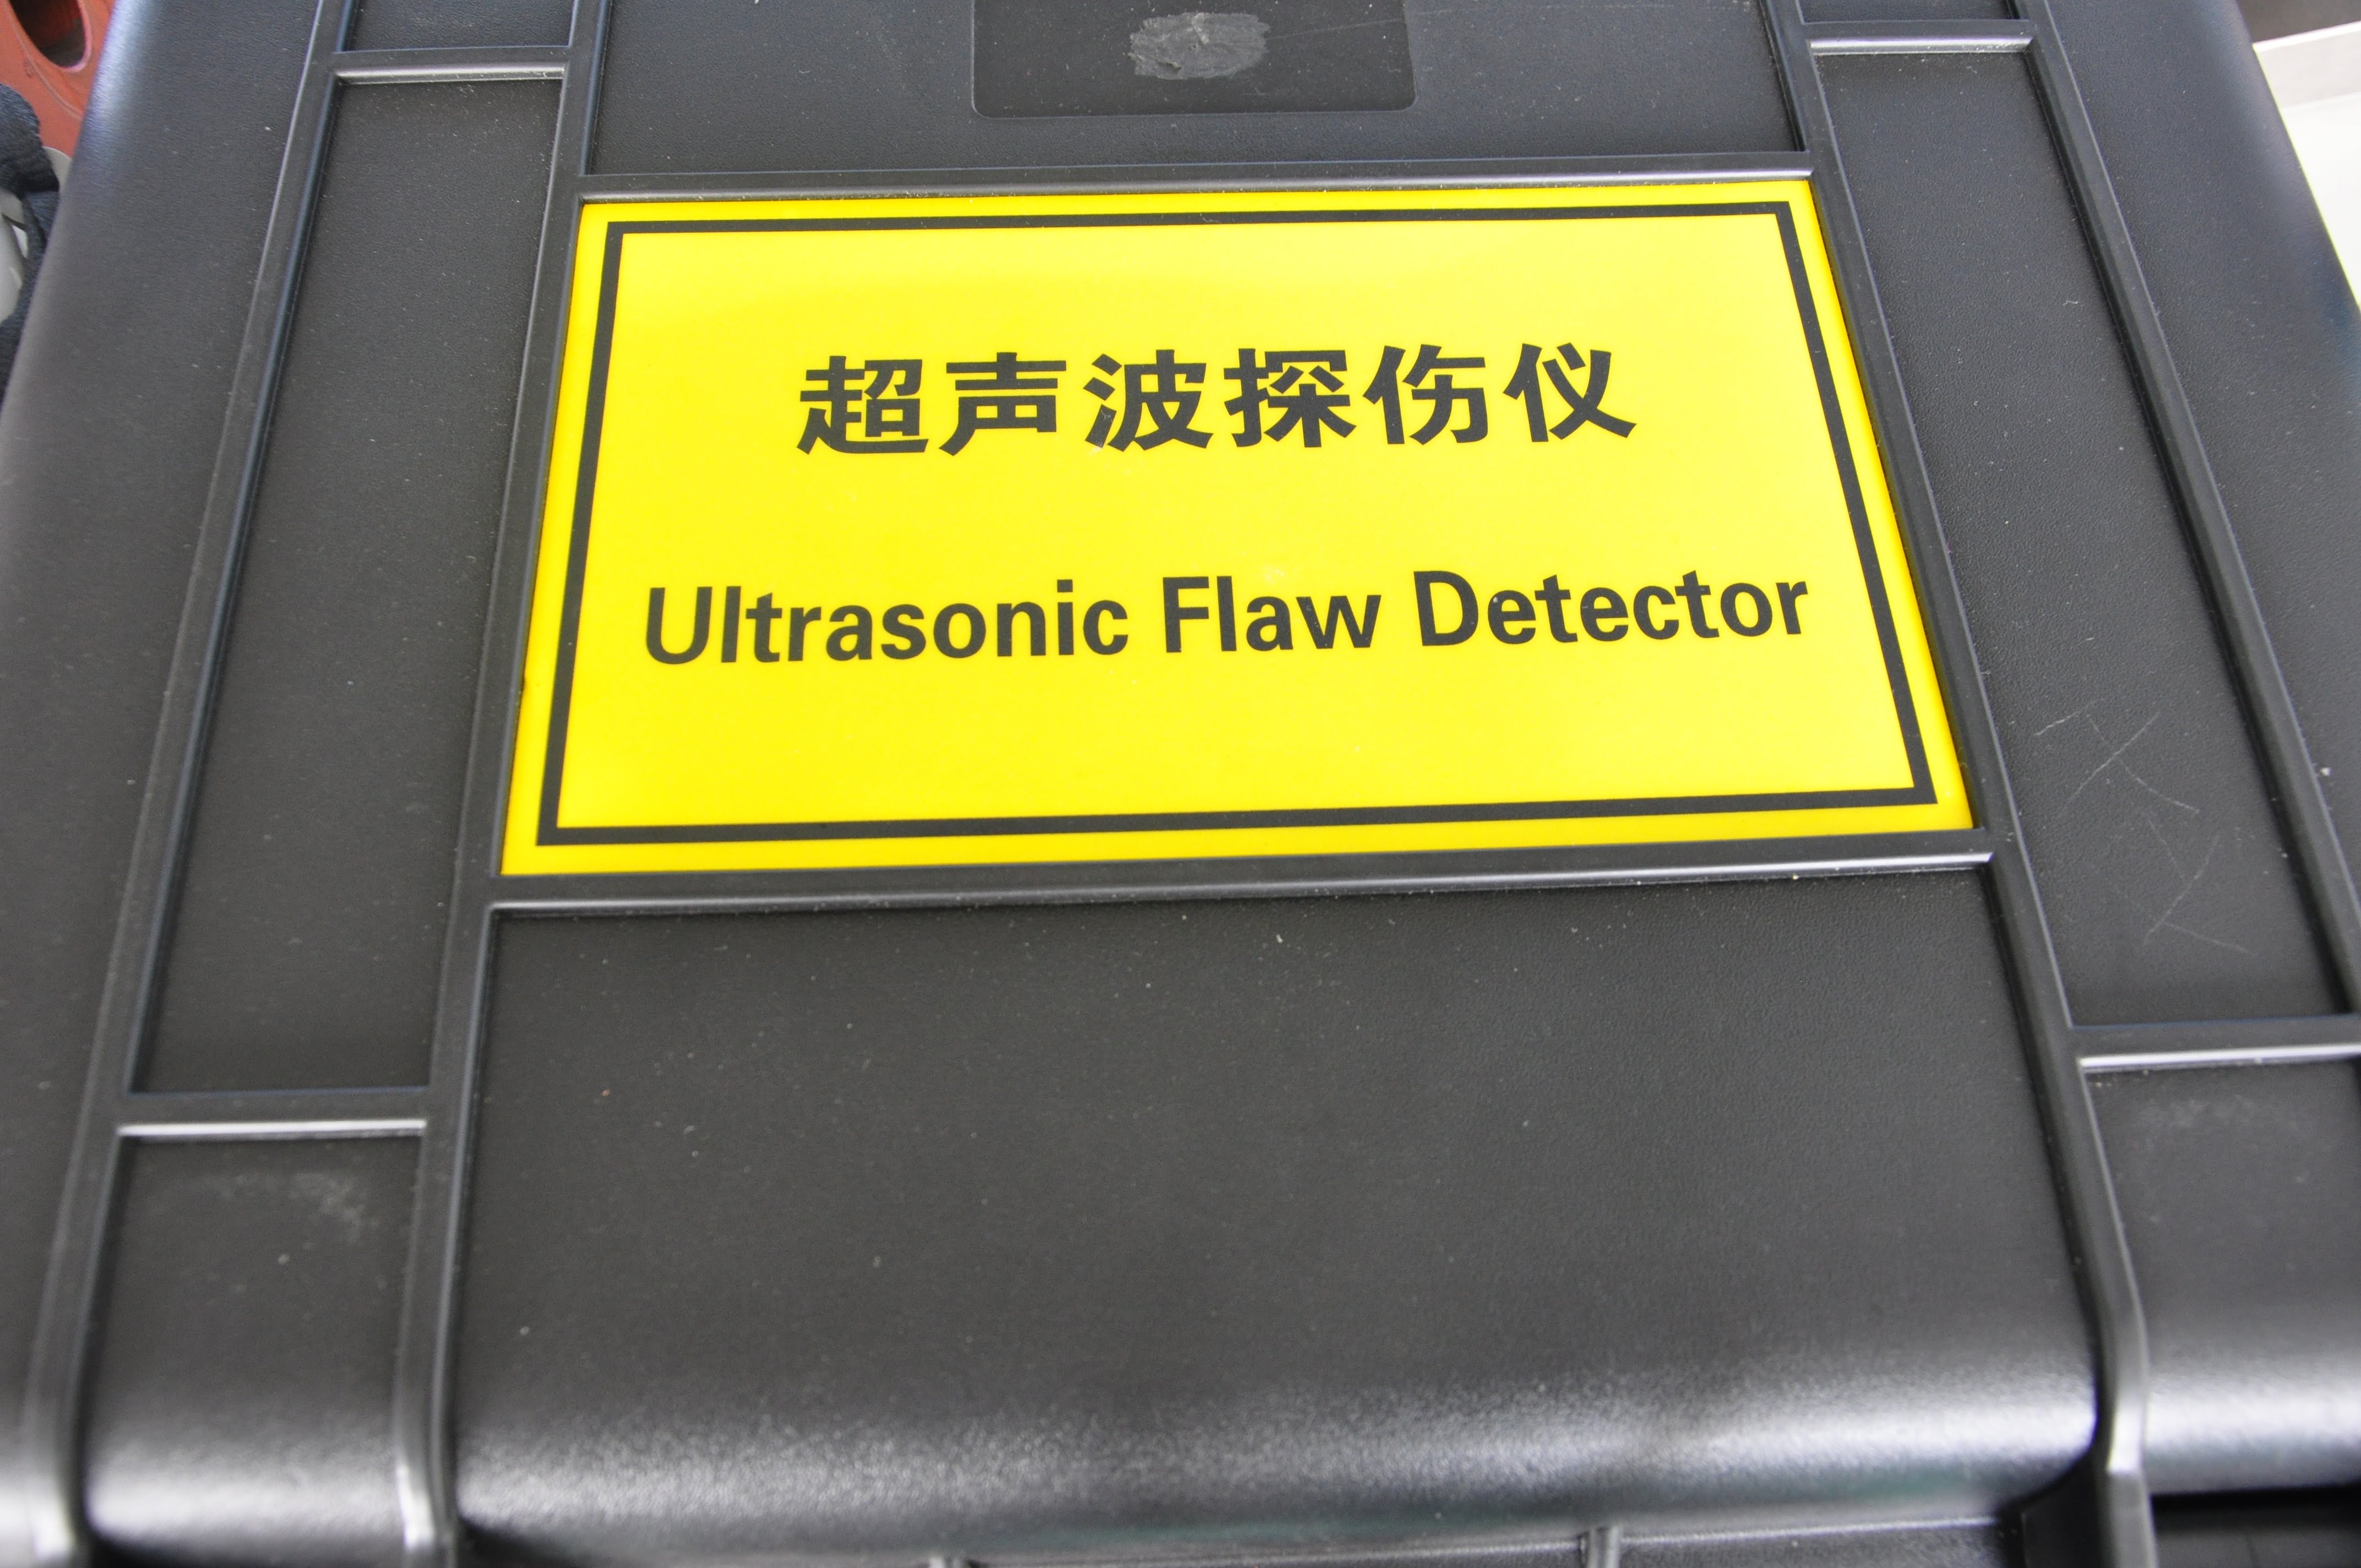 Ultrasonic Flaw Detactor